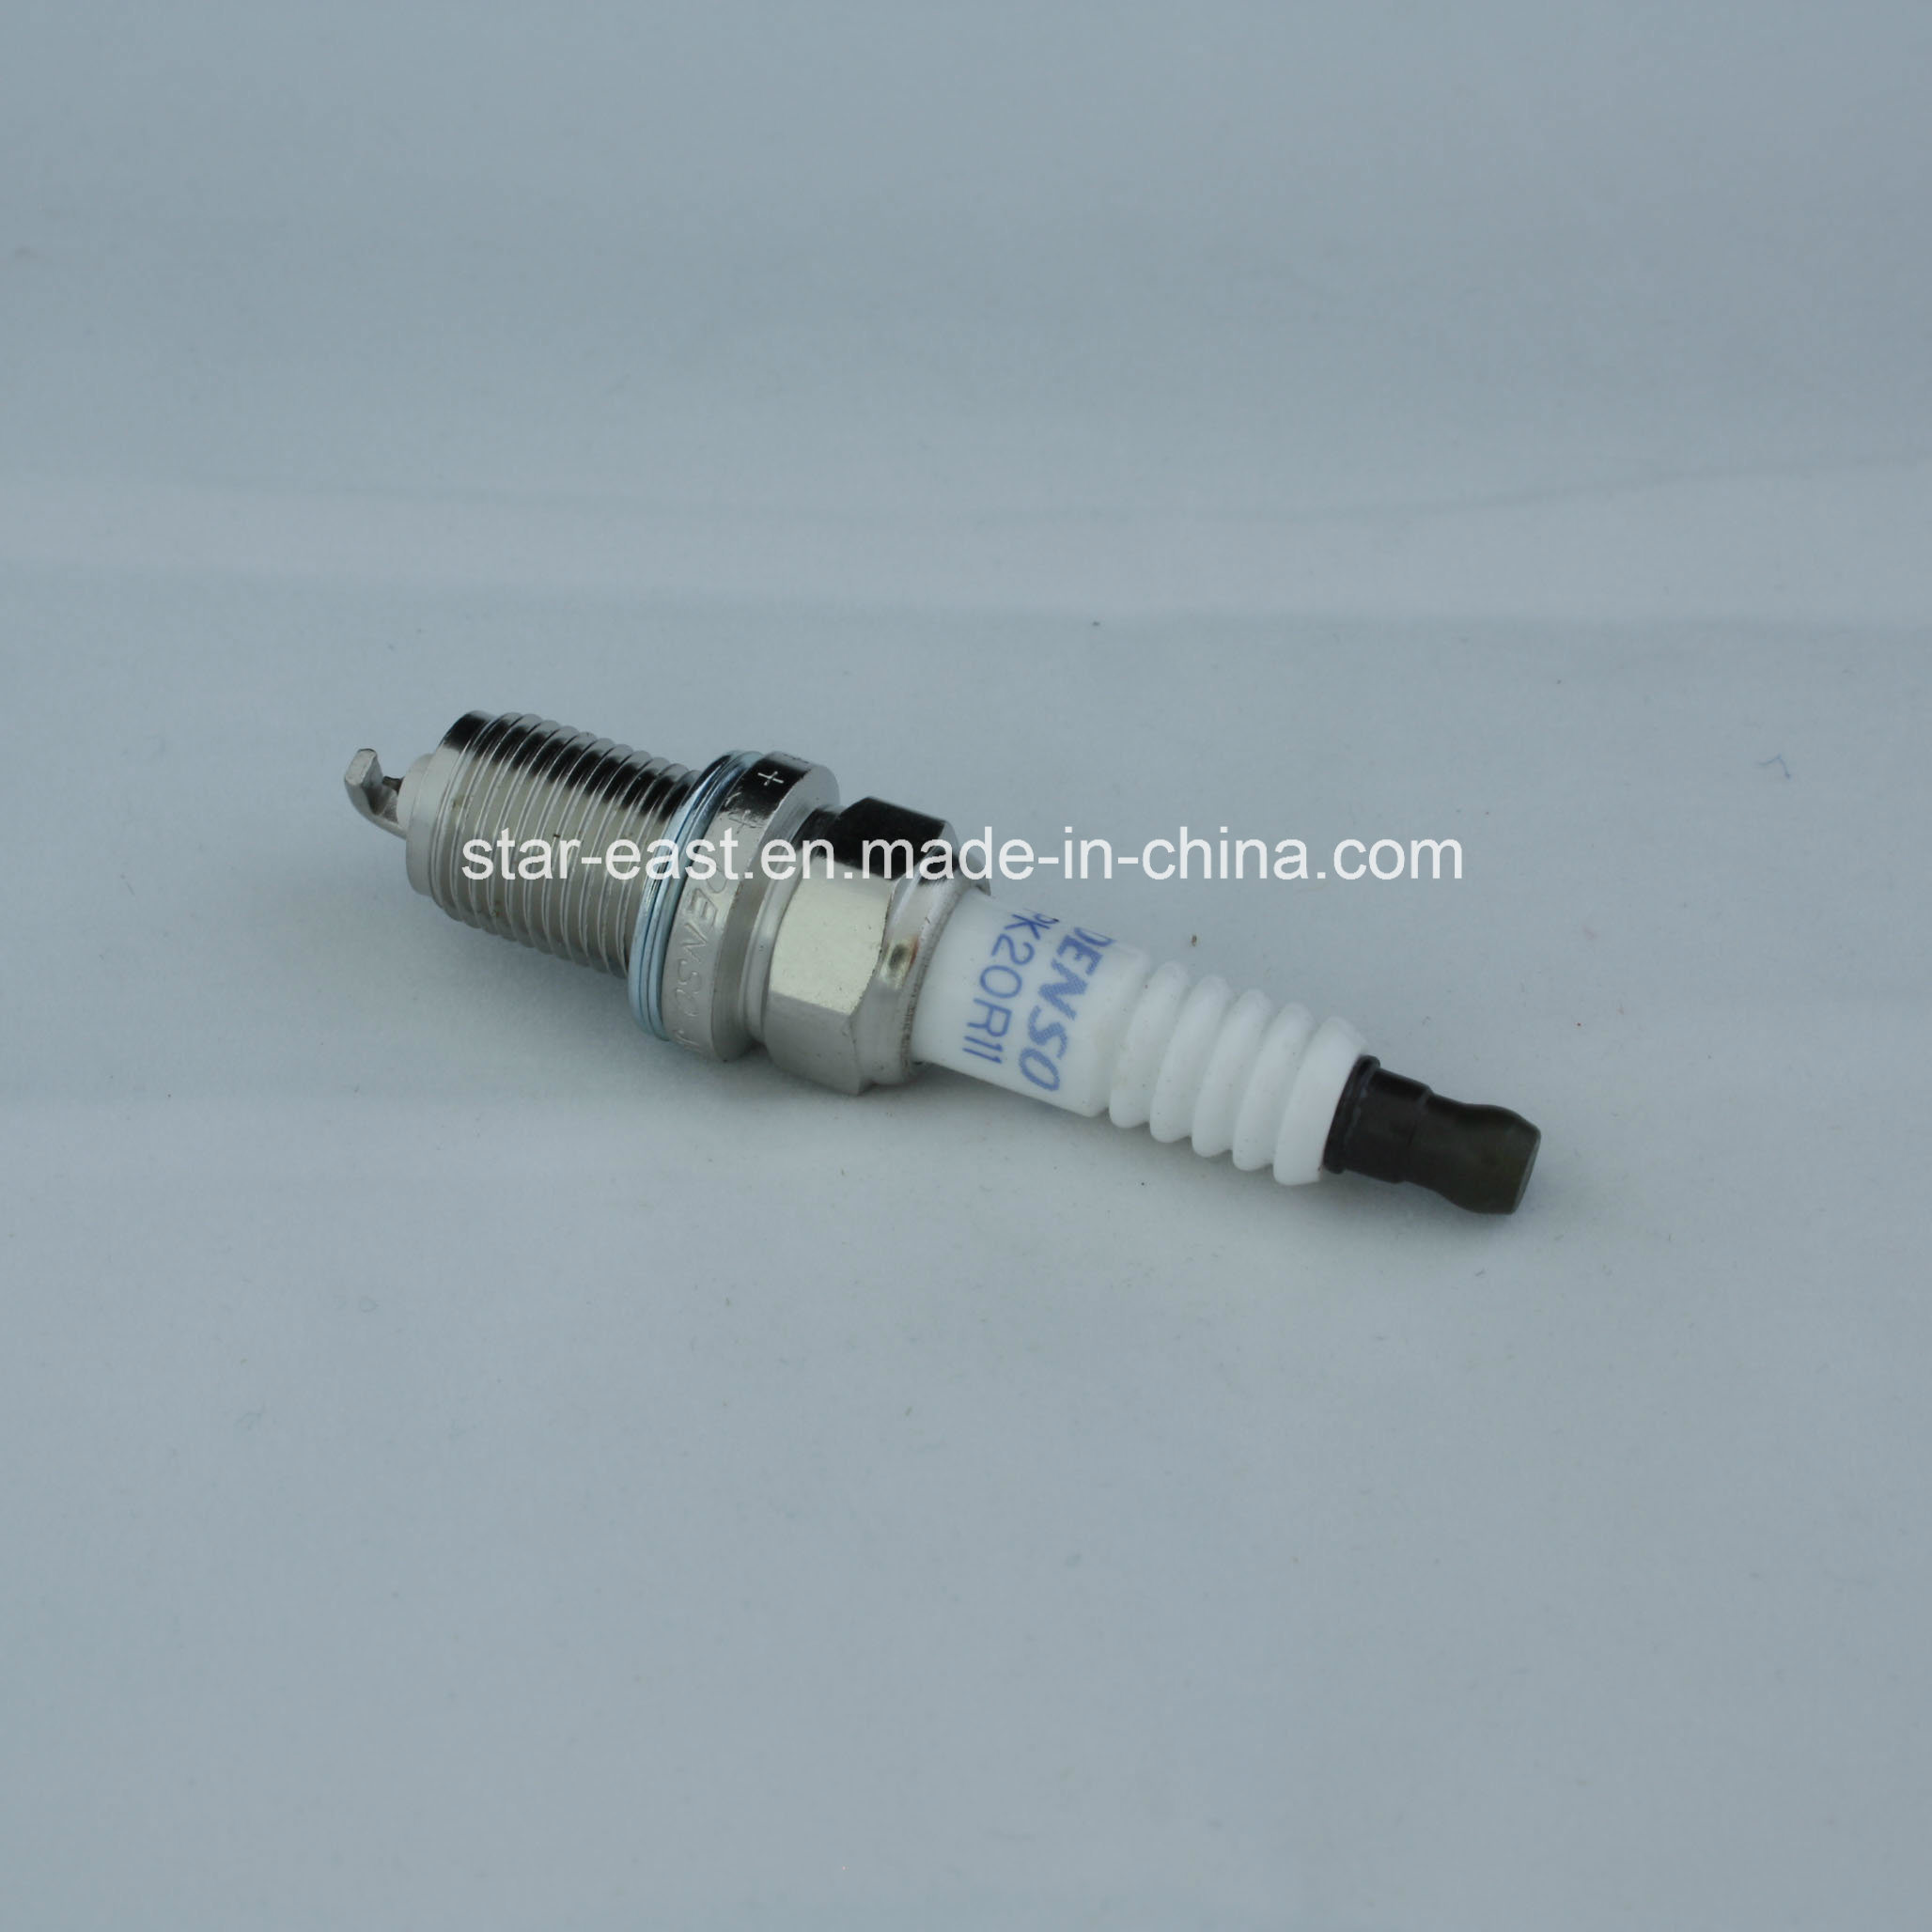 Iridium Power Spark Plug 90919 01178 for Denso Pk20r11